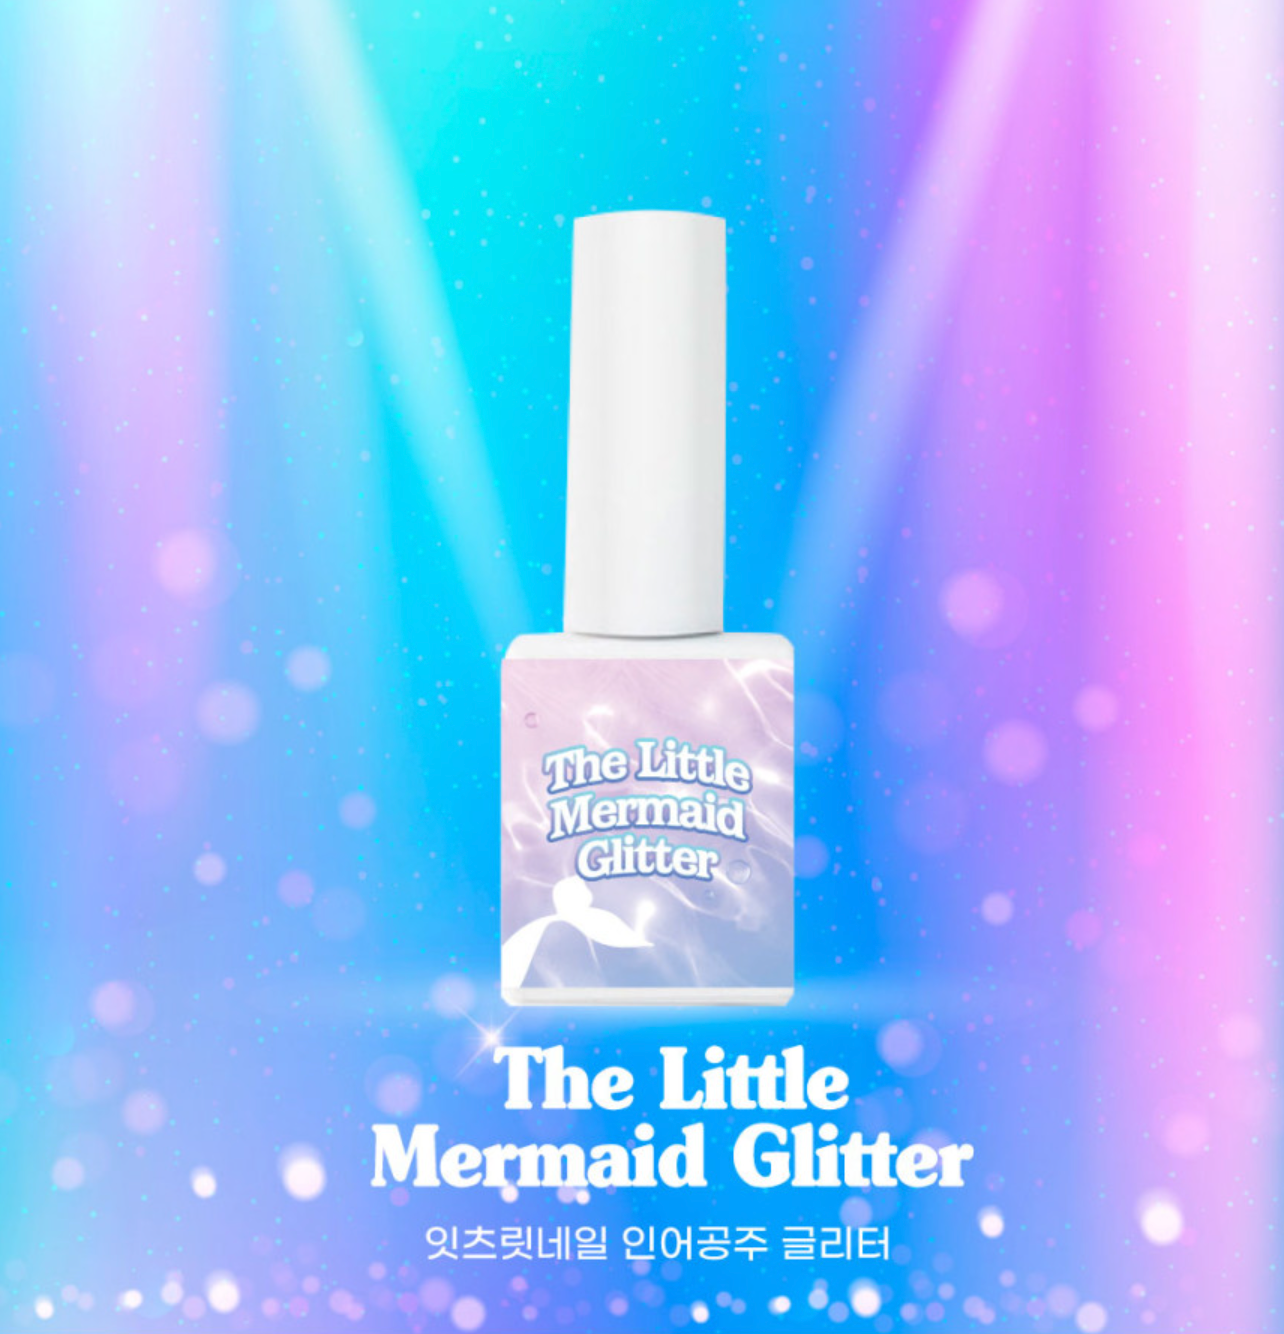 It’s Lit - The Little Mermaid Glitter